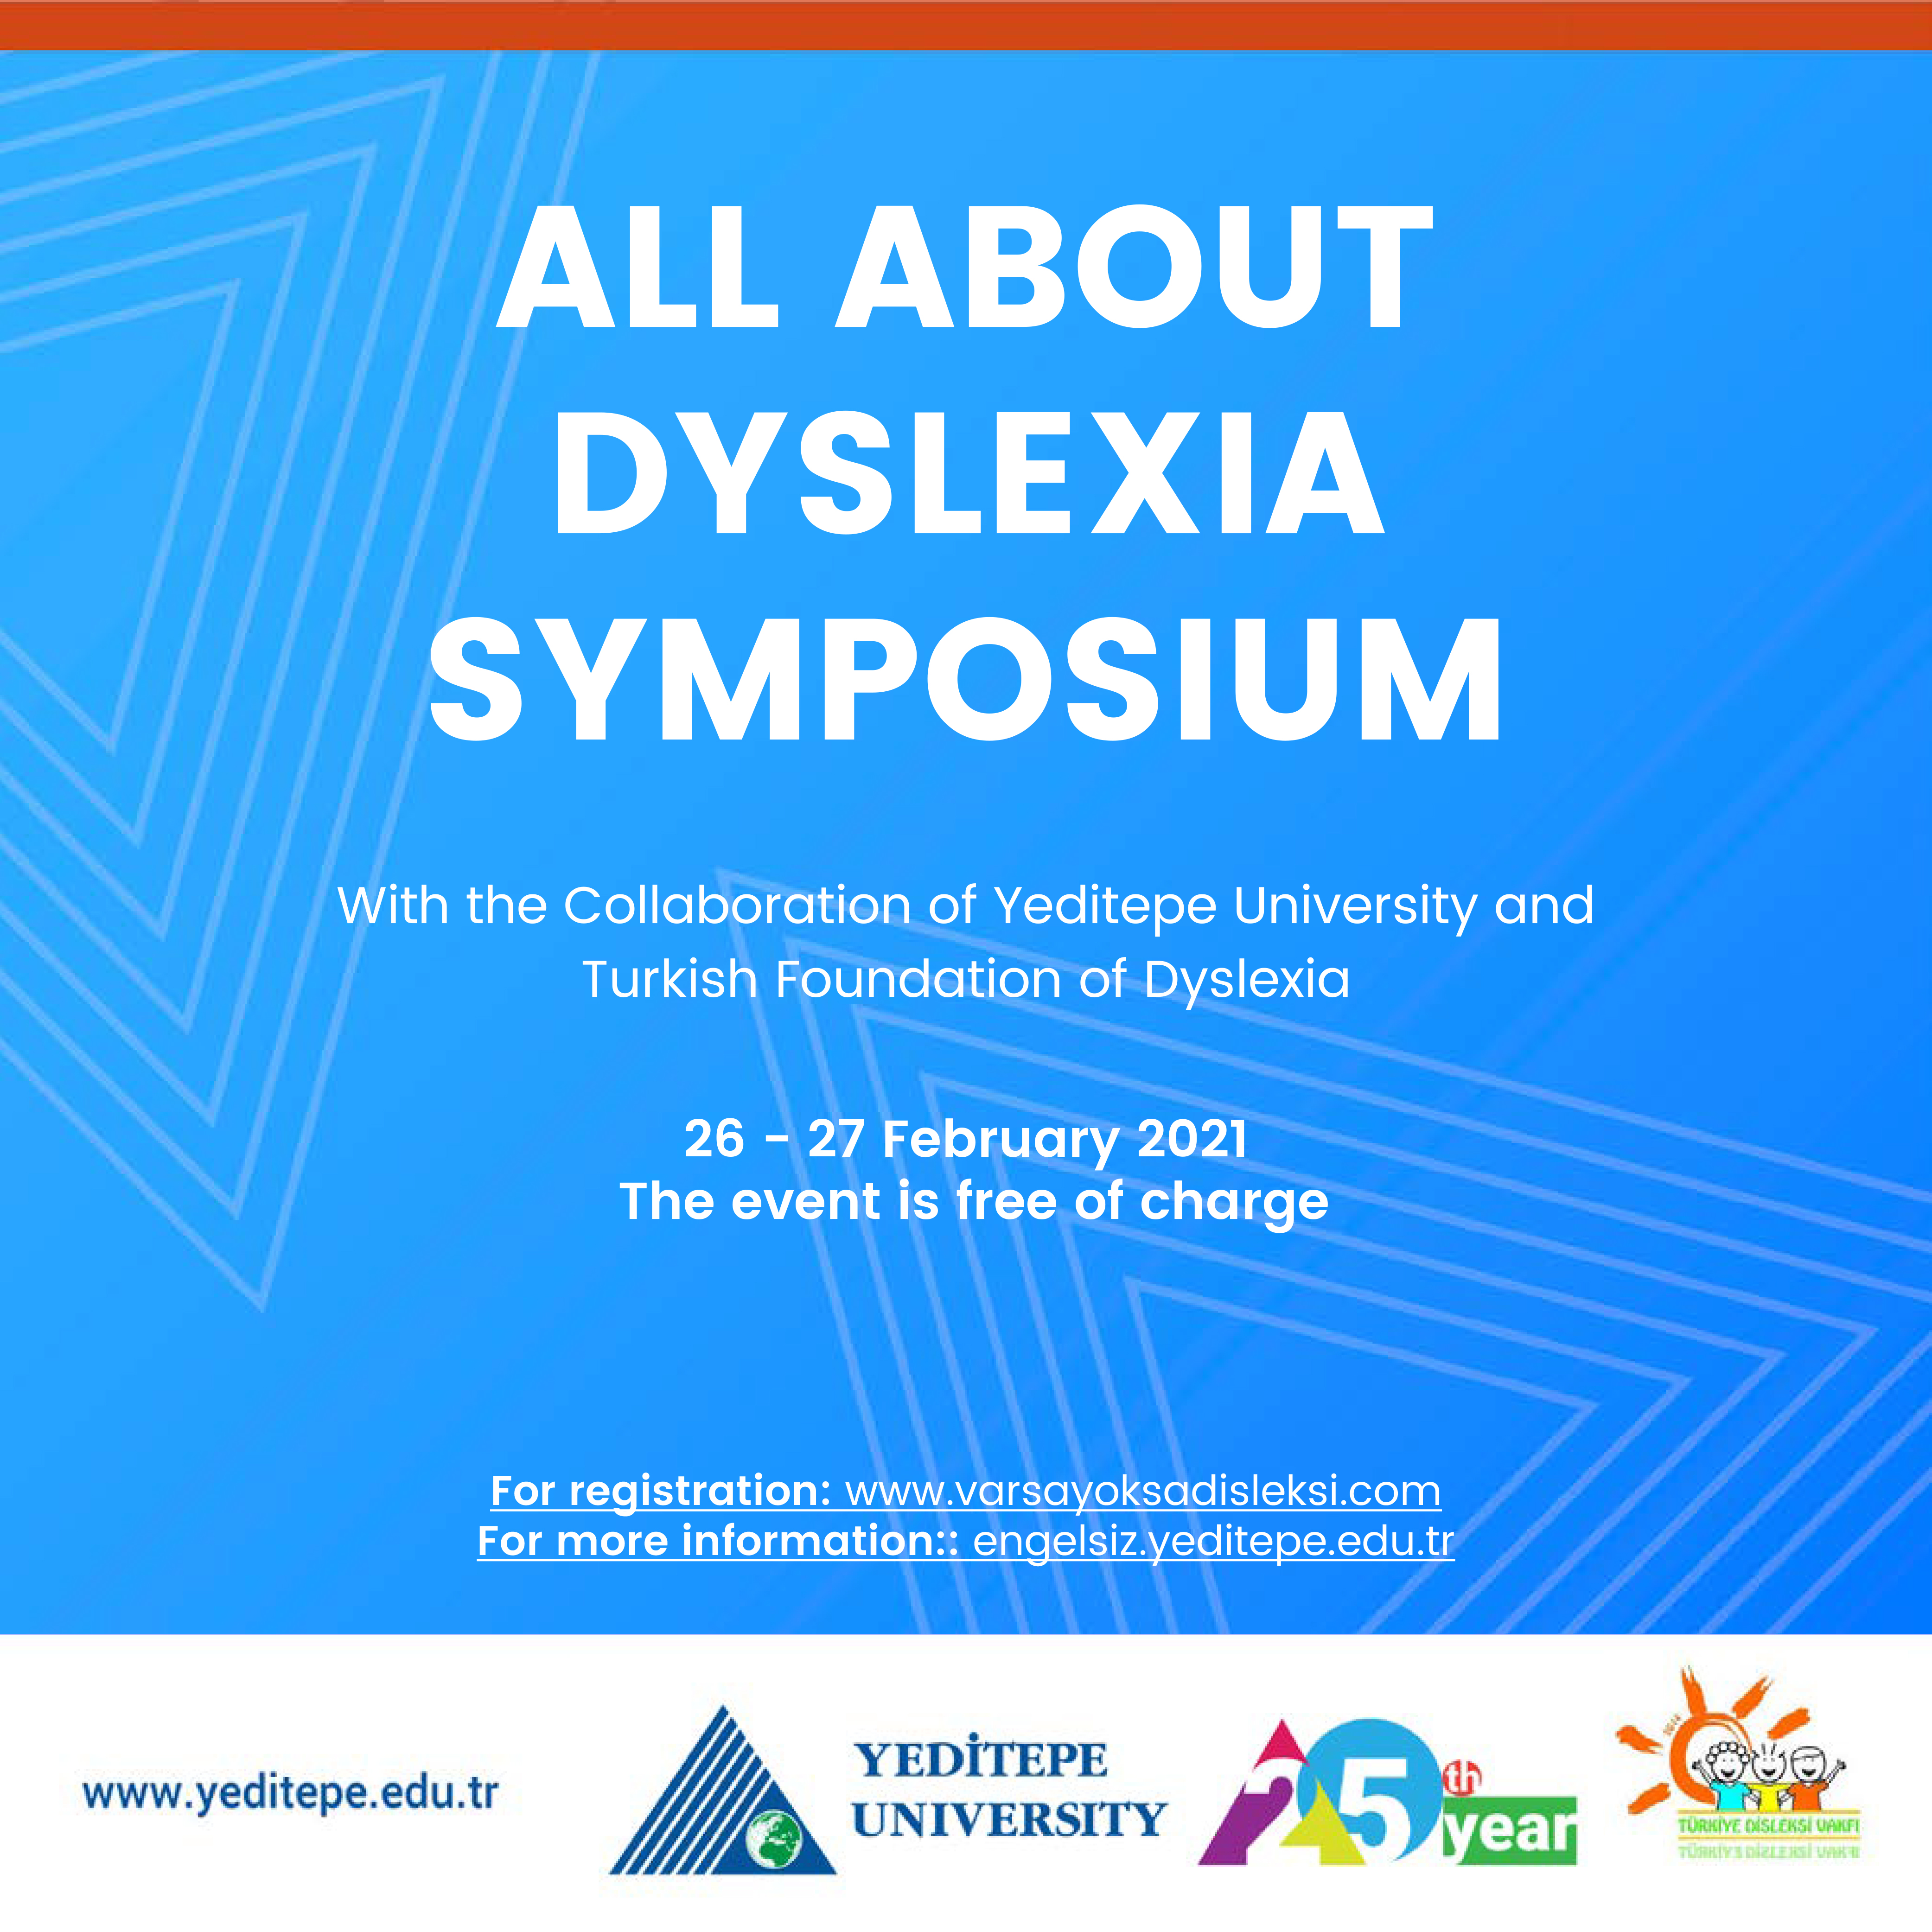 All About Dyslexia Symposium